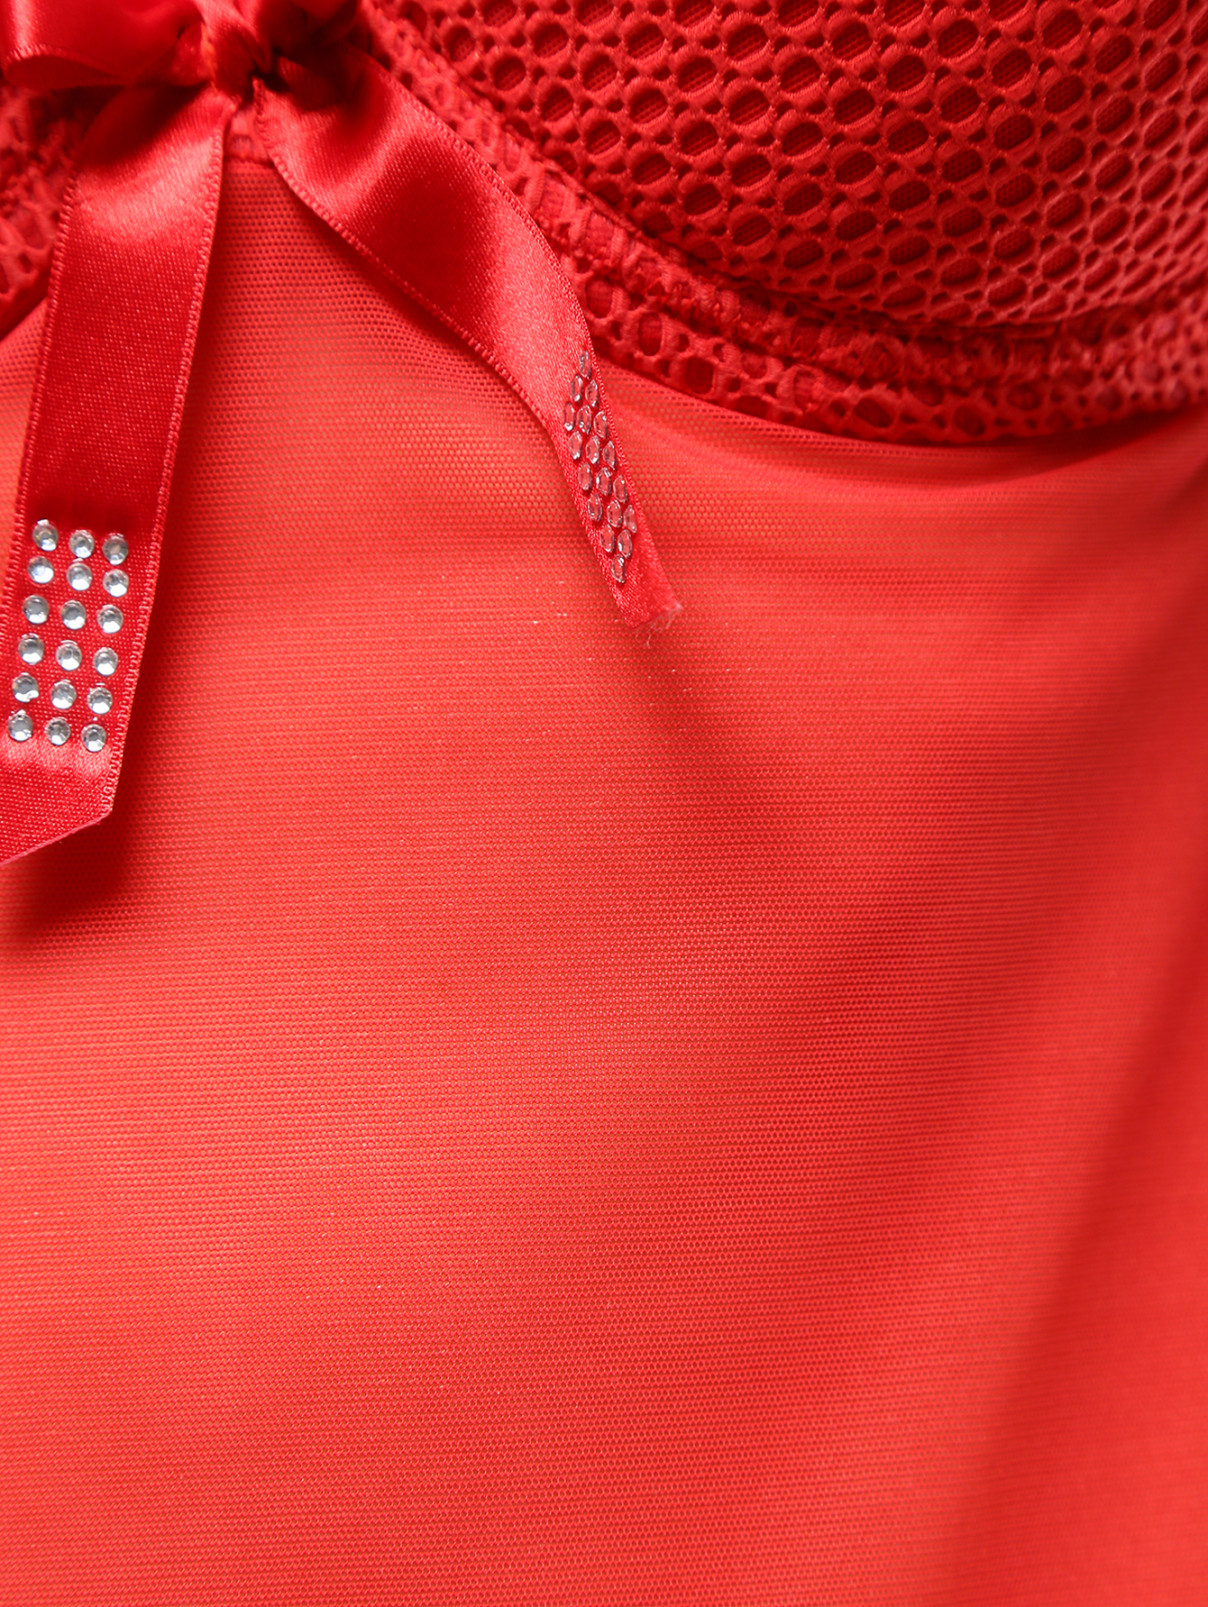 Прозрачная сорочка с завязкой на шее Rosapois  –  Деталь  – Цвет:  Красный